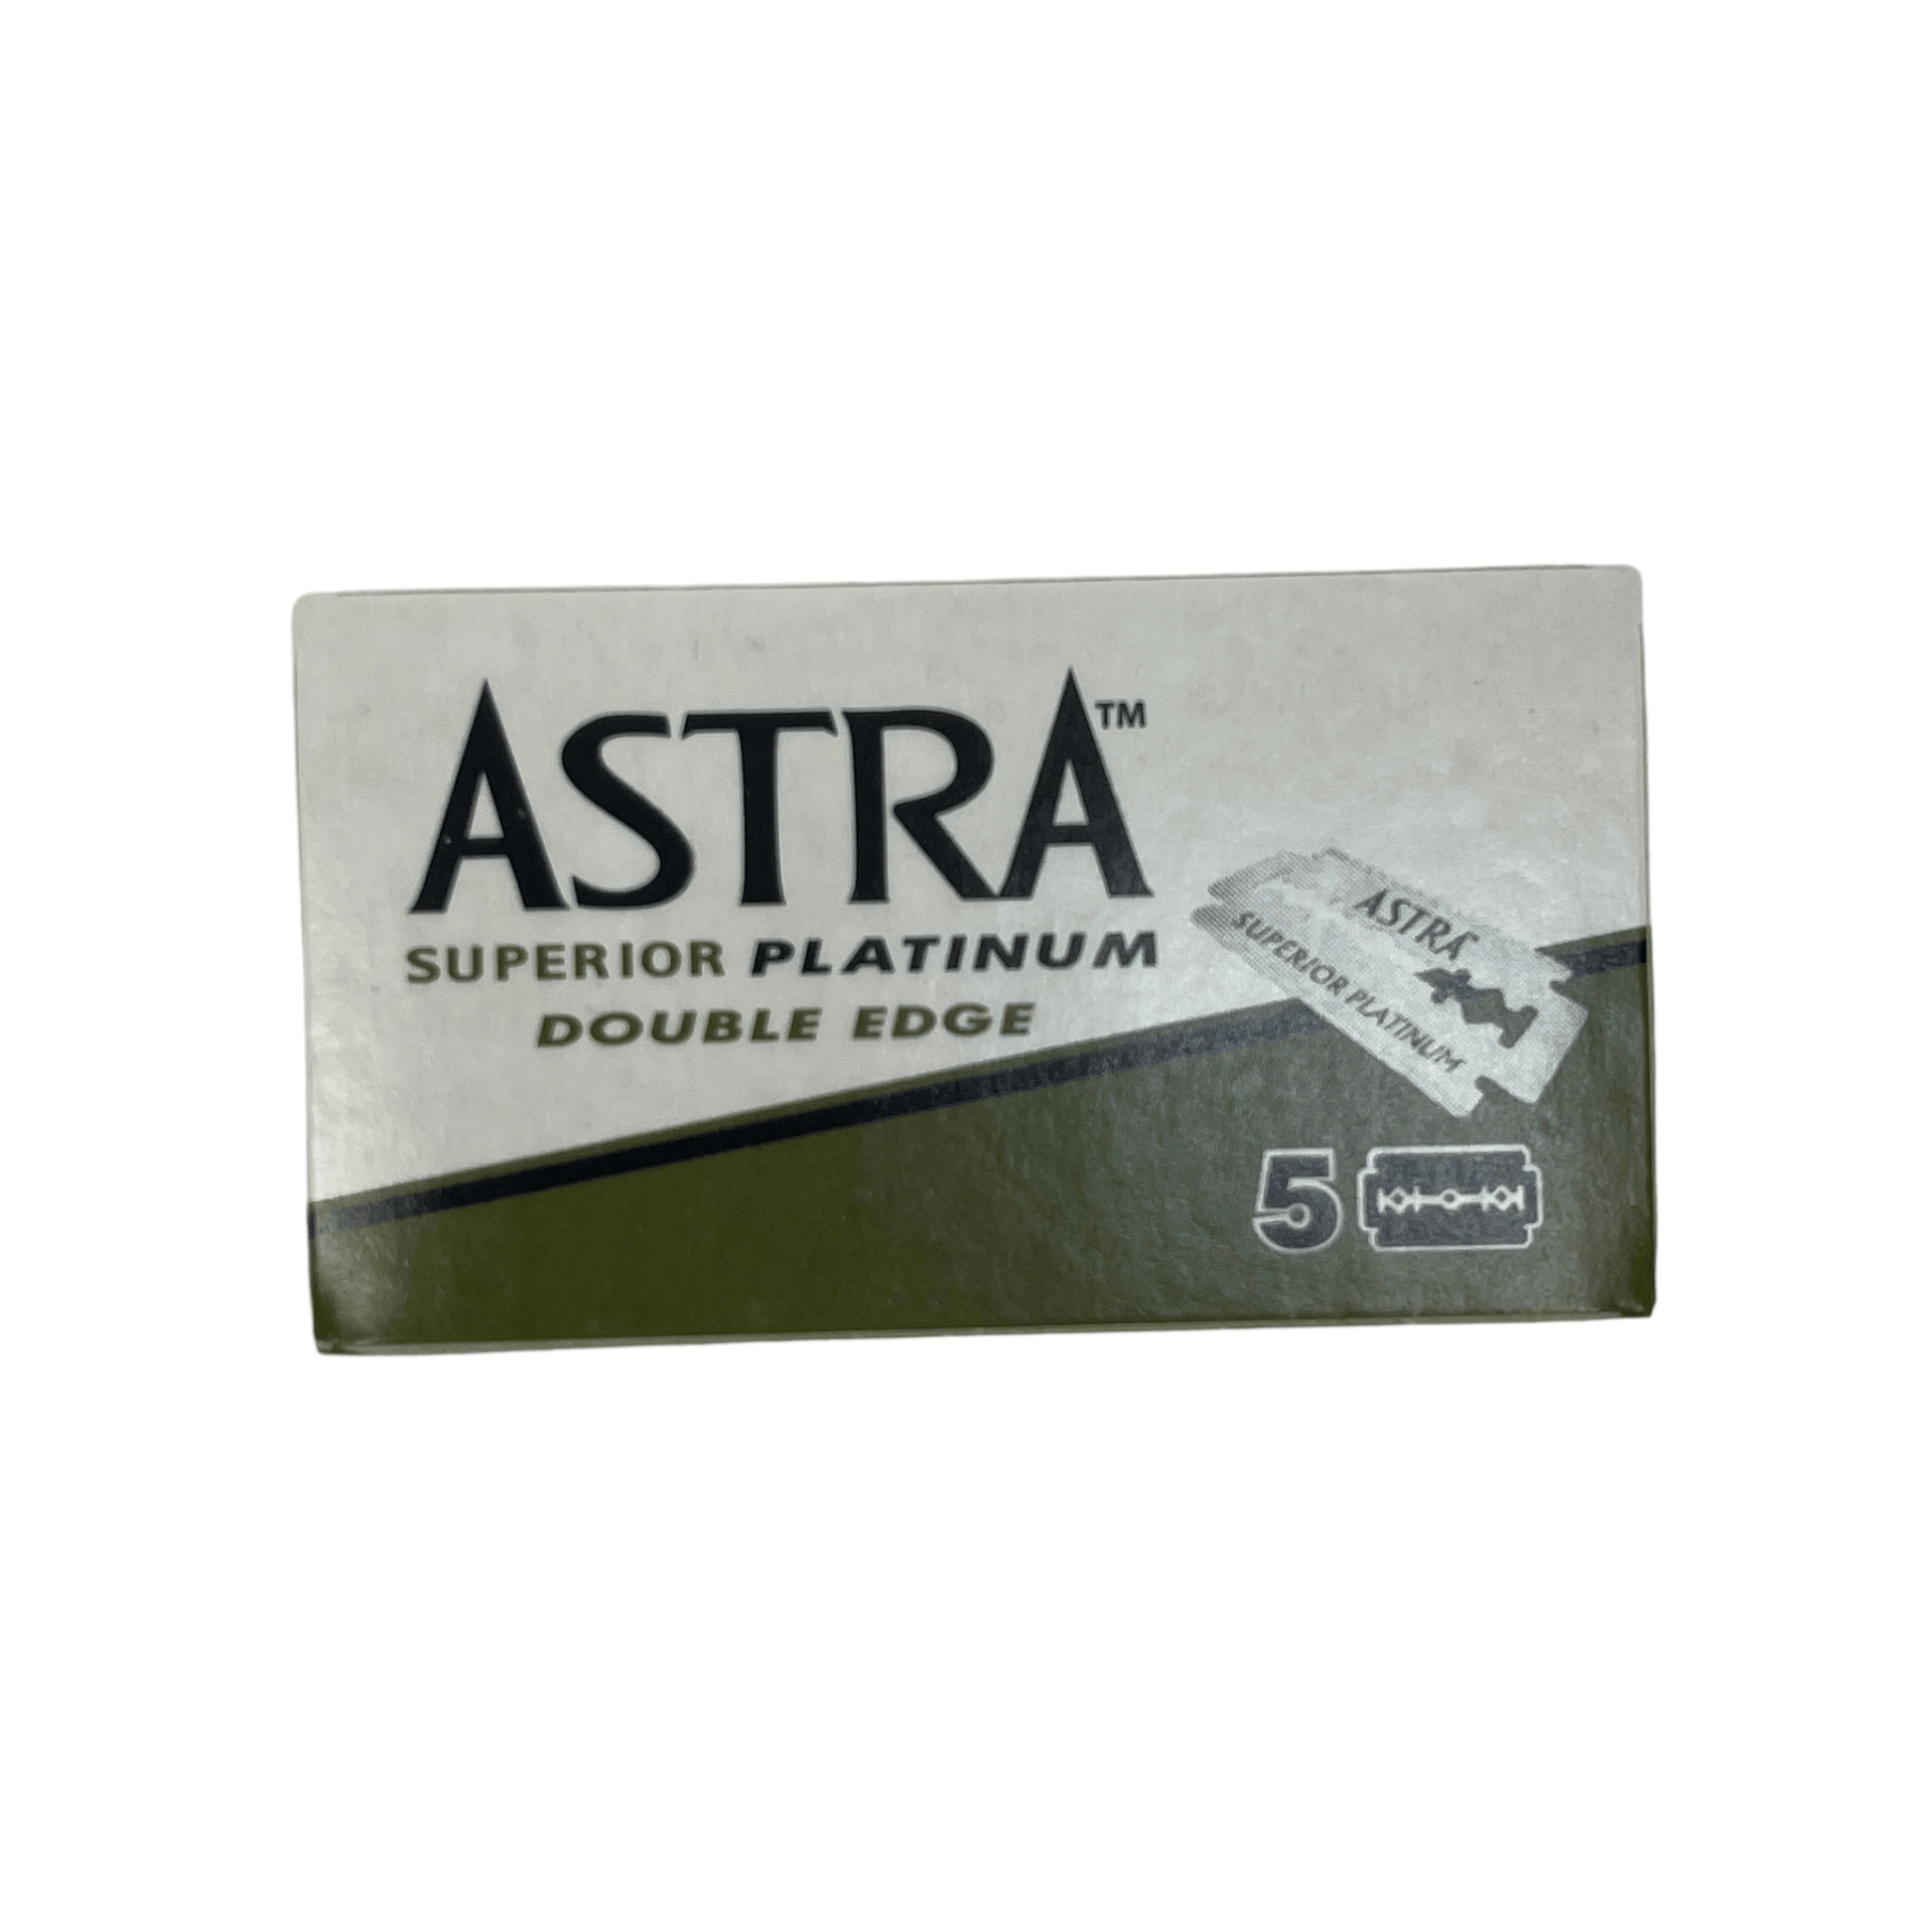 Small box of 5 Astra razor blades 